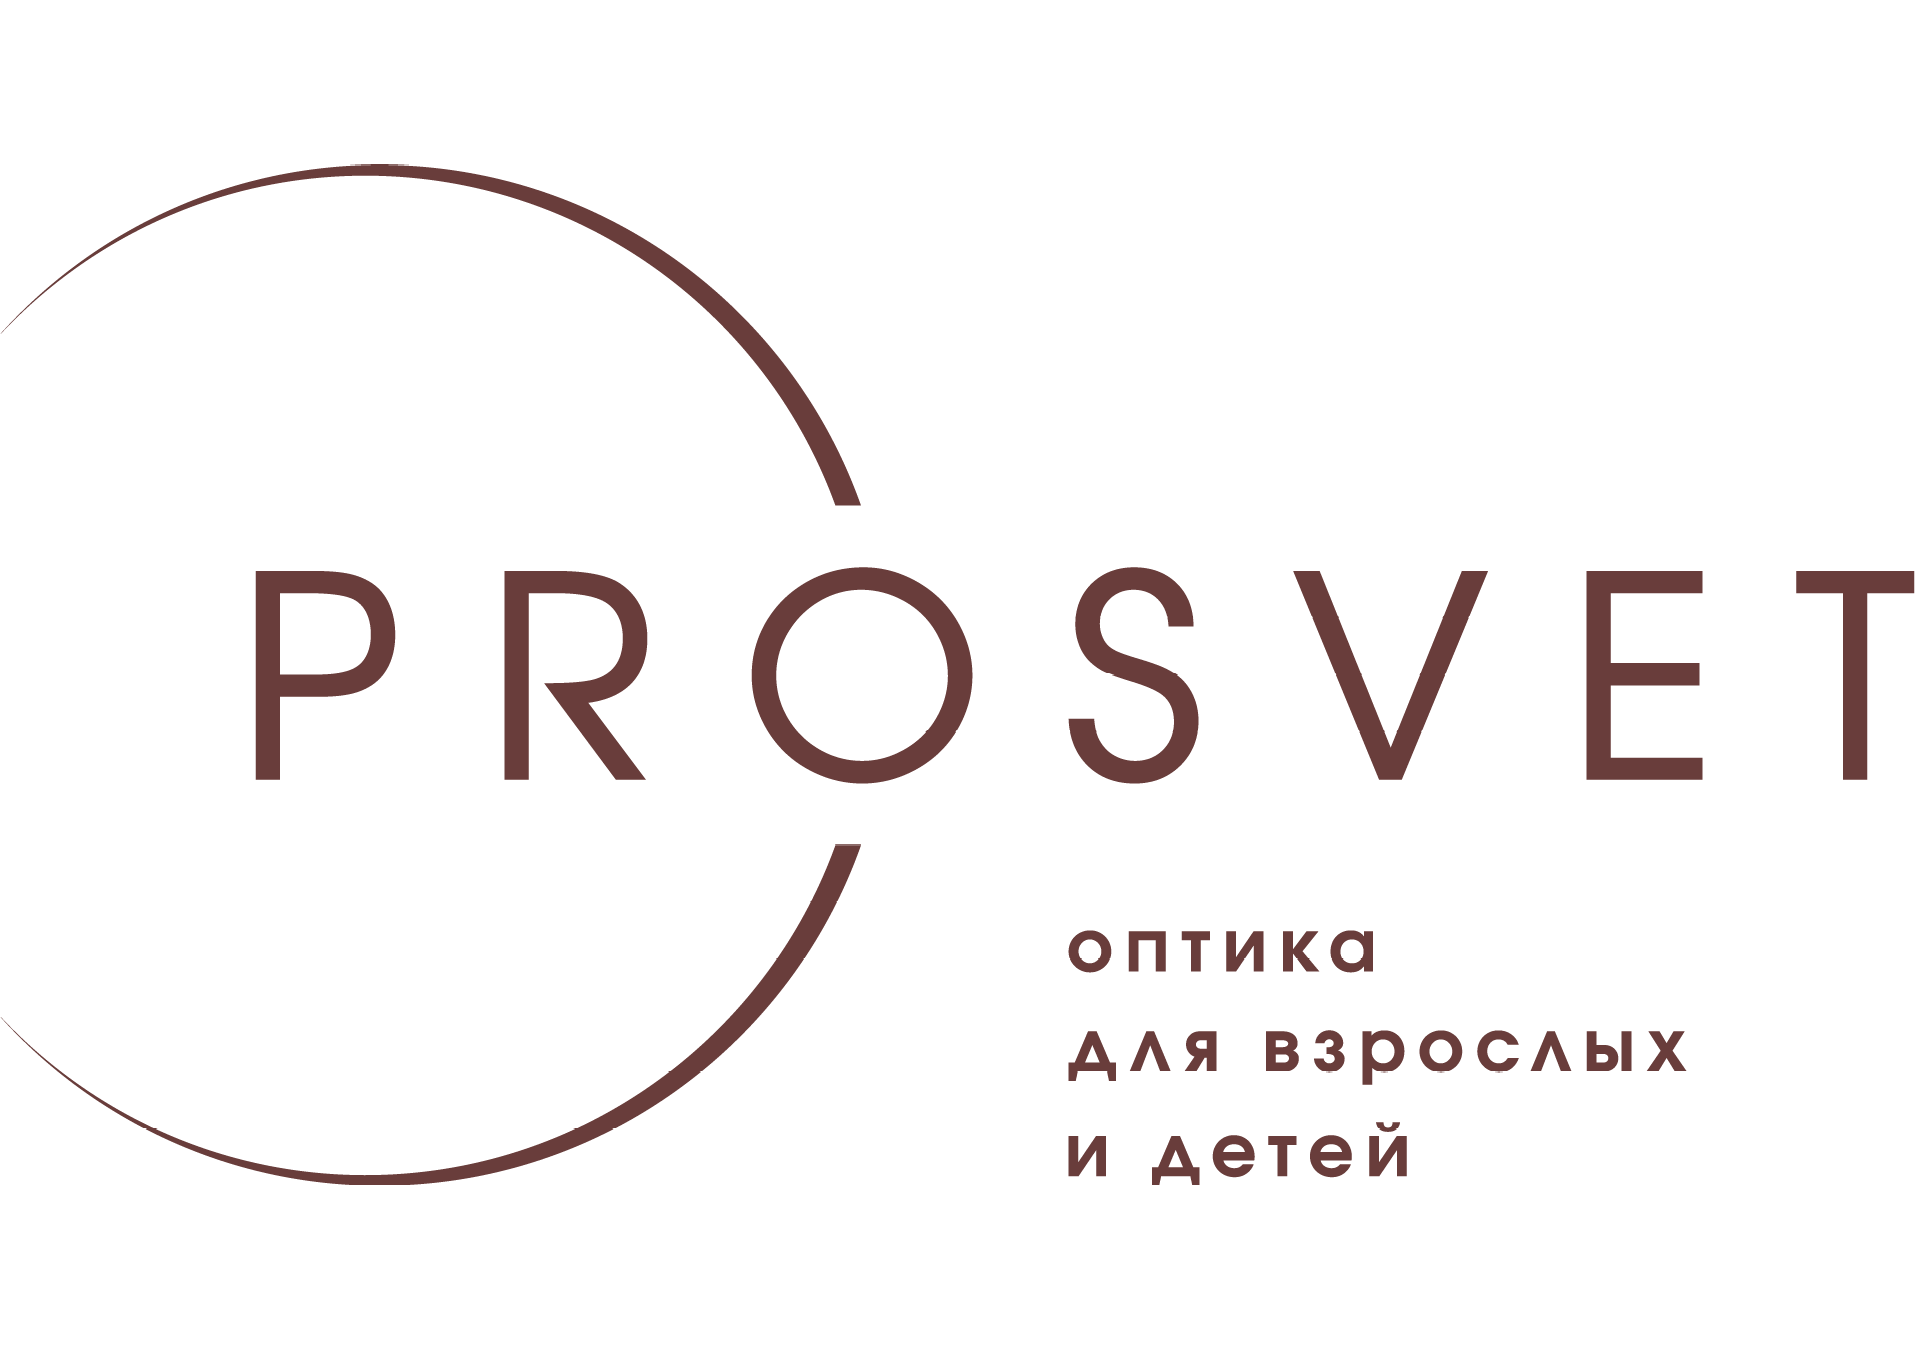 Сеть оптик "PROSVET" на Мстиславца